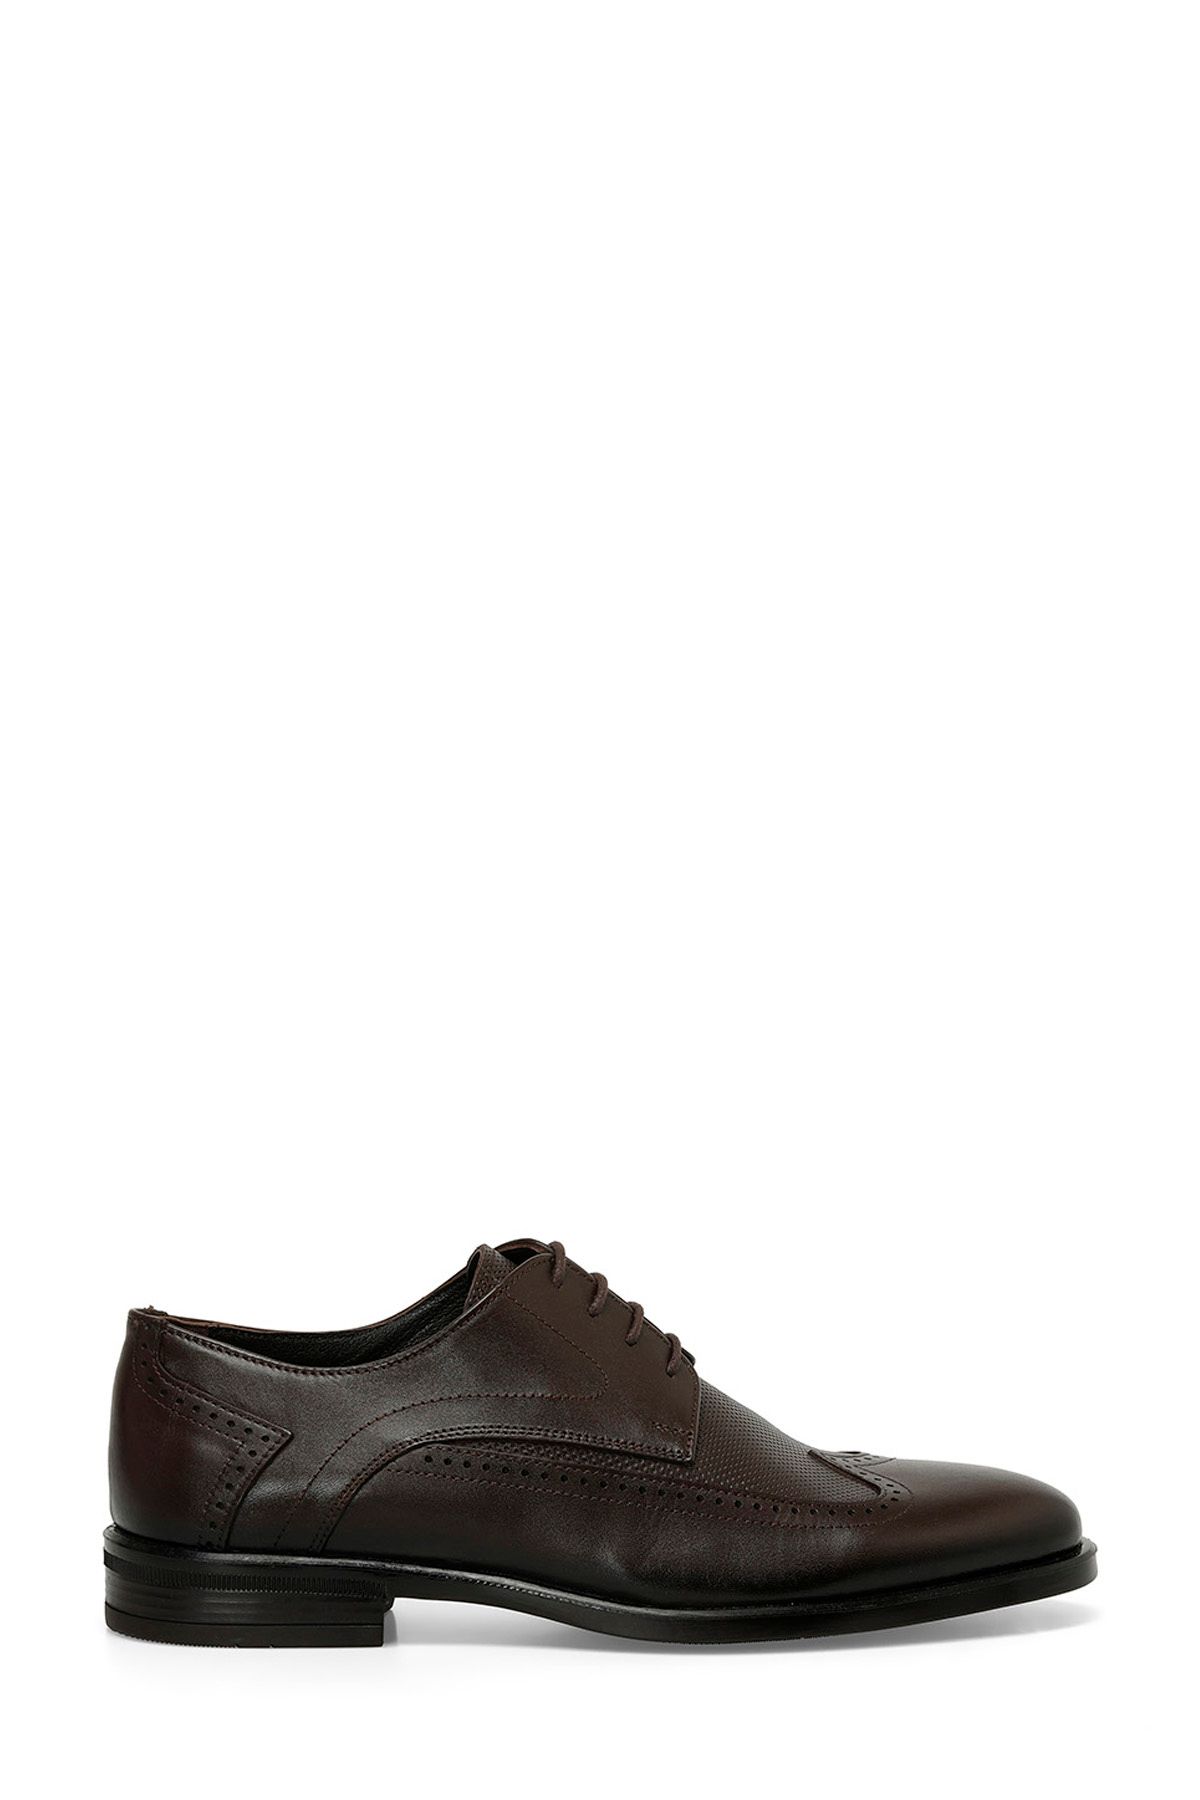 İnci INCI IRON 4FX Kahverengi Erkek Klasik Ayakkabı